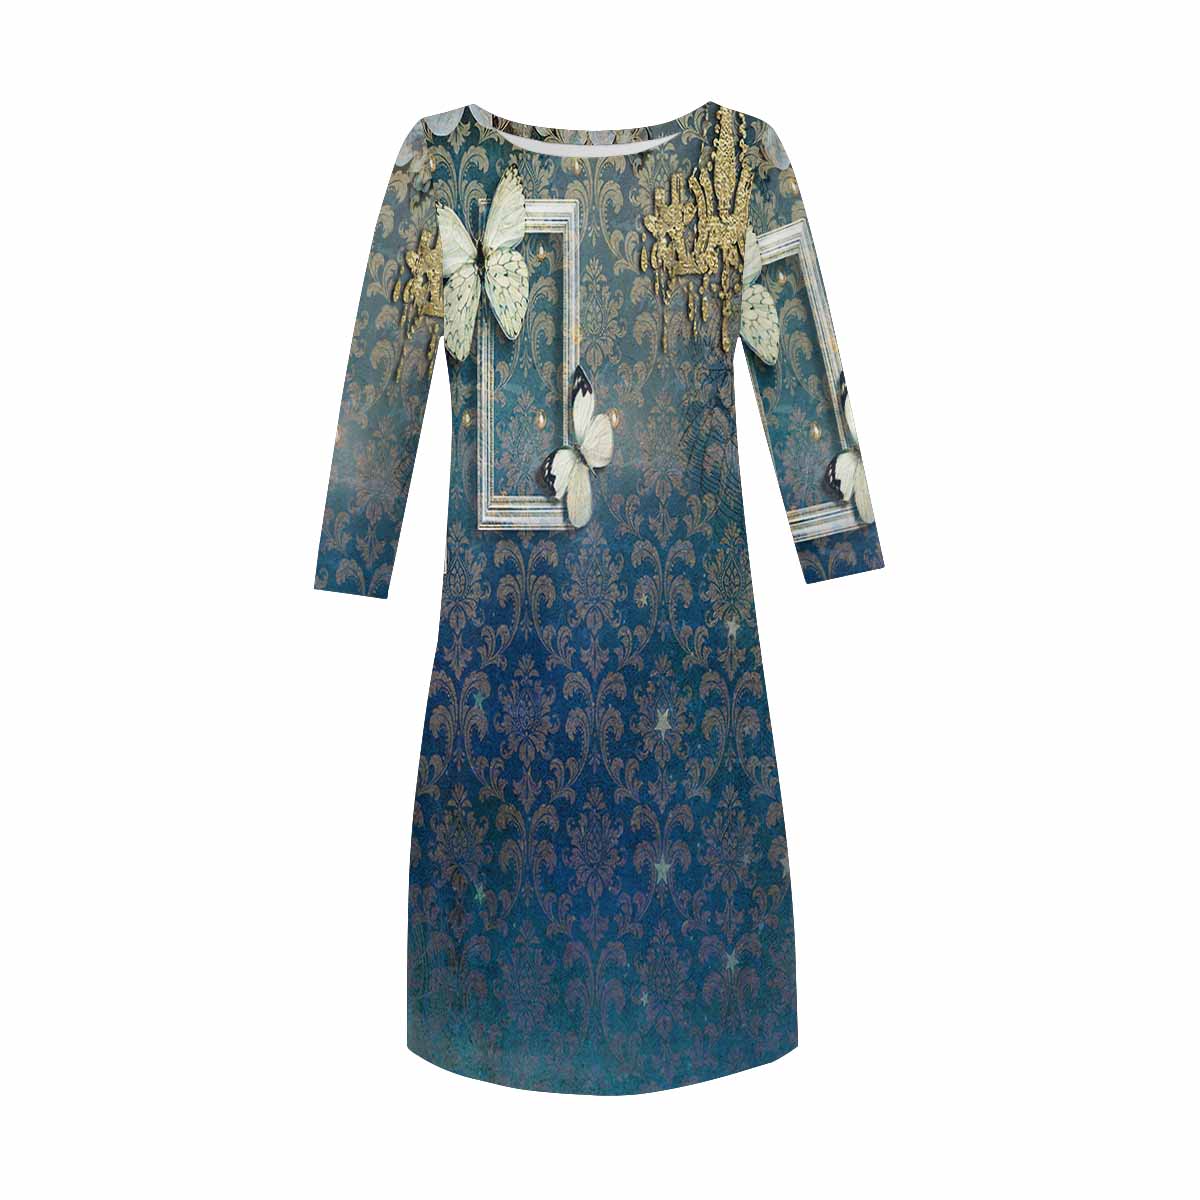 Antique General loose dress, MODEL 29532, design 10